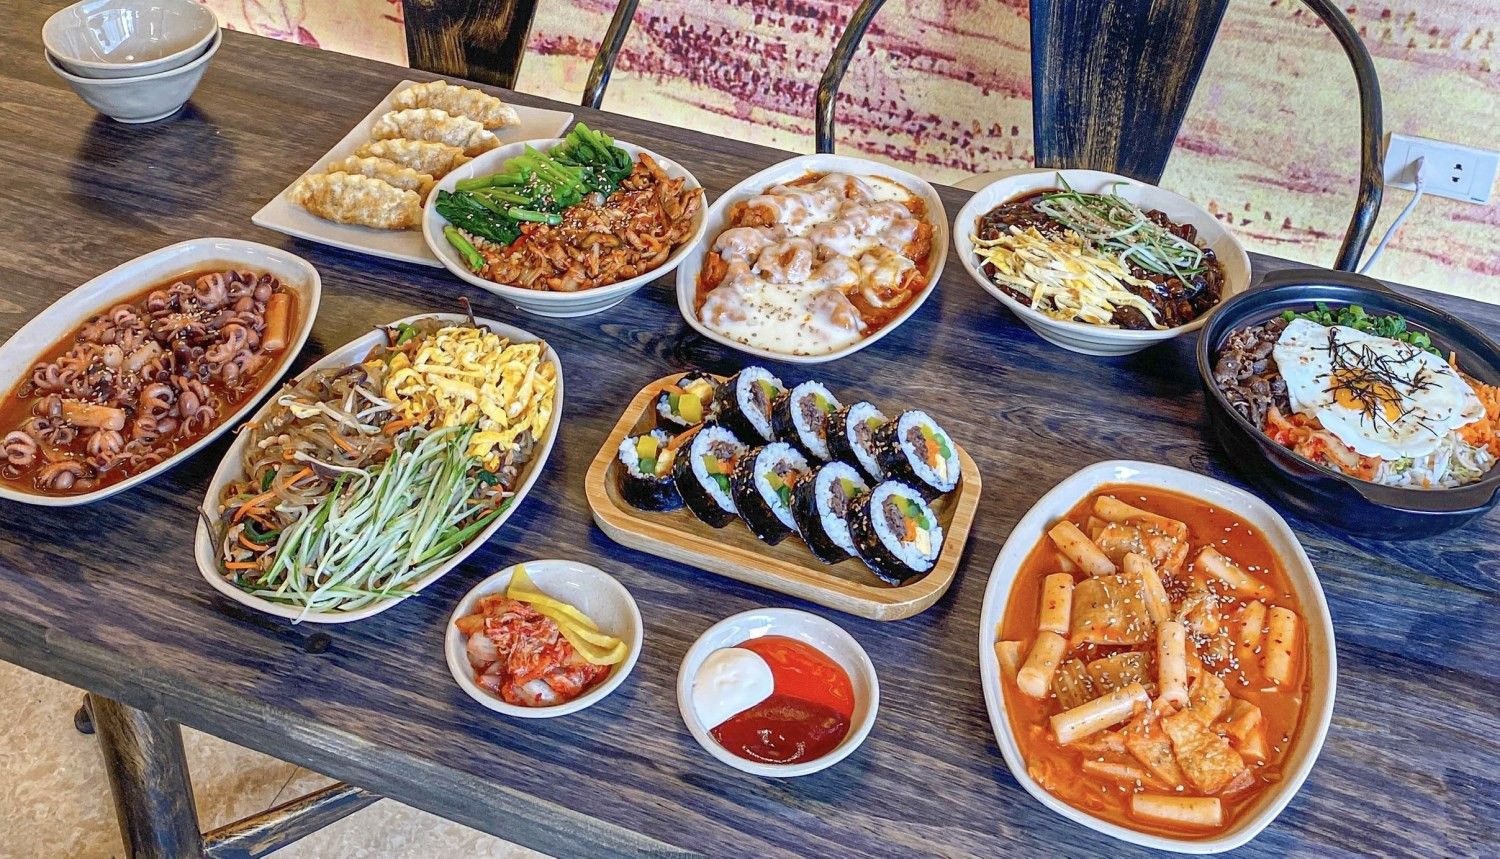 Nhà hàng Seon - Buffet cao cấp ở Hà Nội